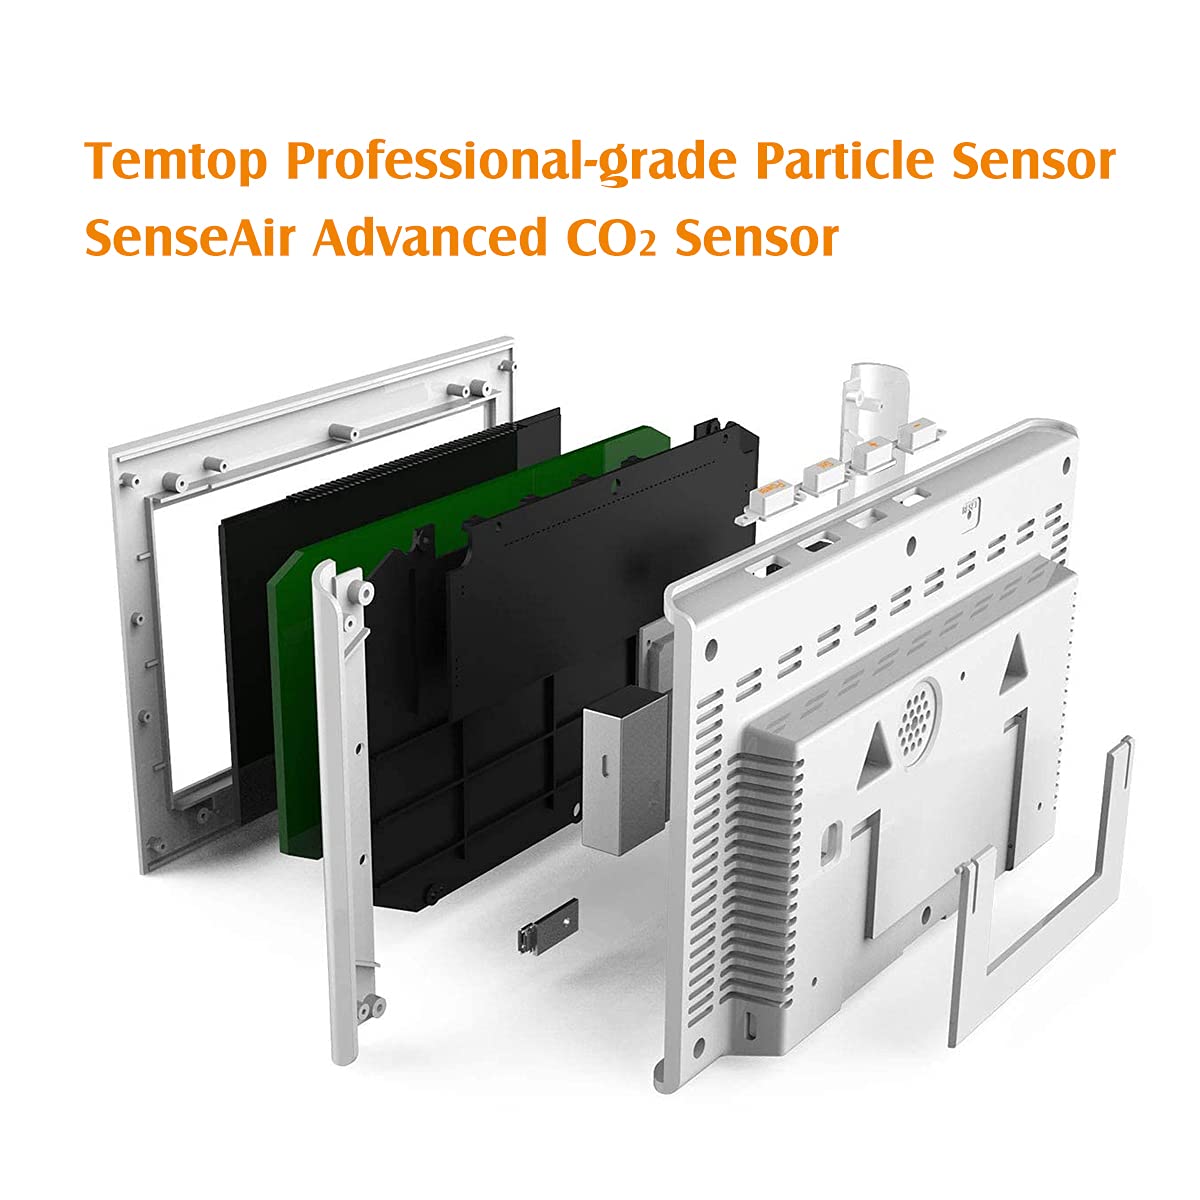 Monitor della qualità dell'aria interna Temtop P20C: misura l'umidità della temperatura PM2,5 PM10 CO2